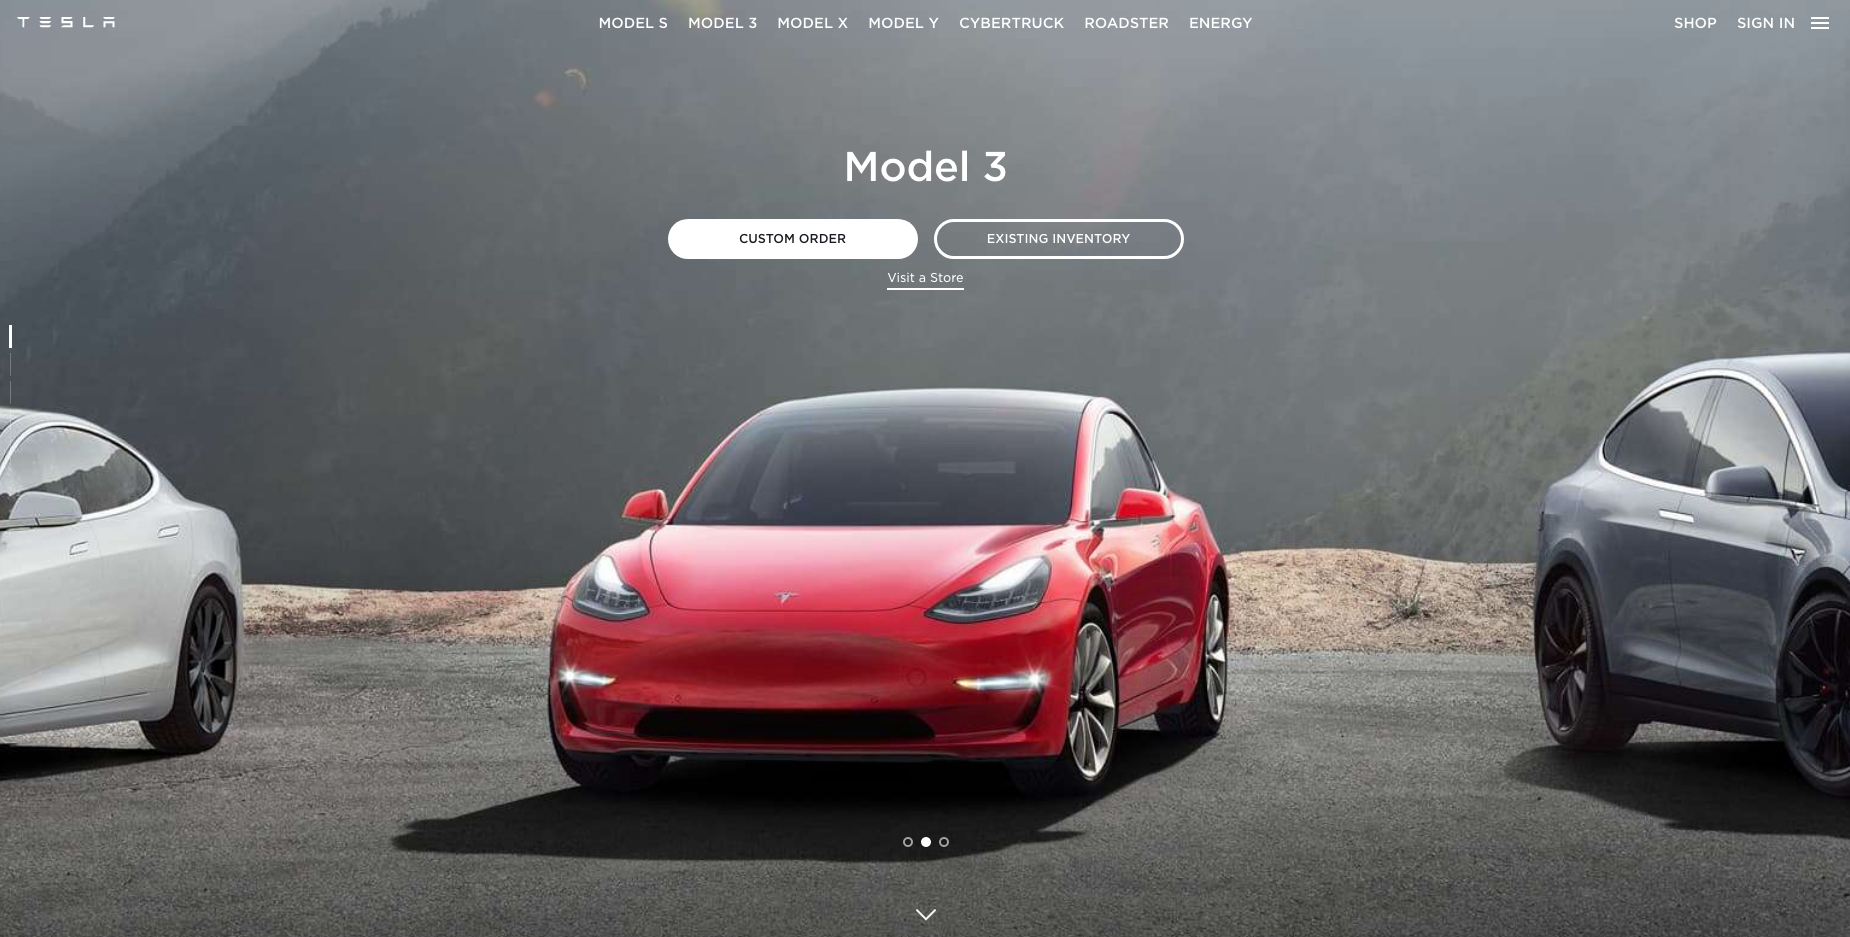 Tesla website